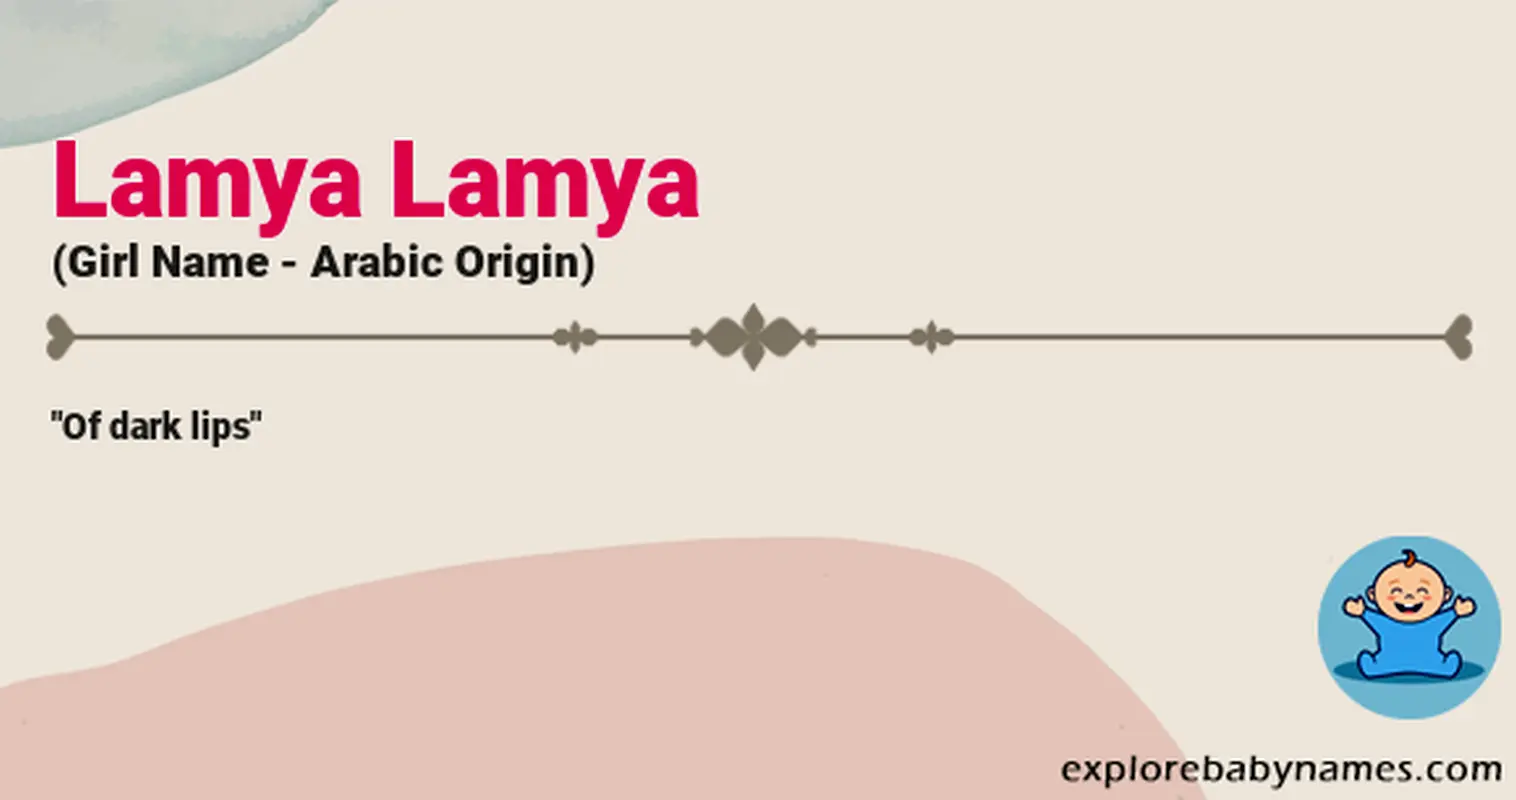 Meaning of Lamya Lamya